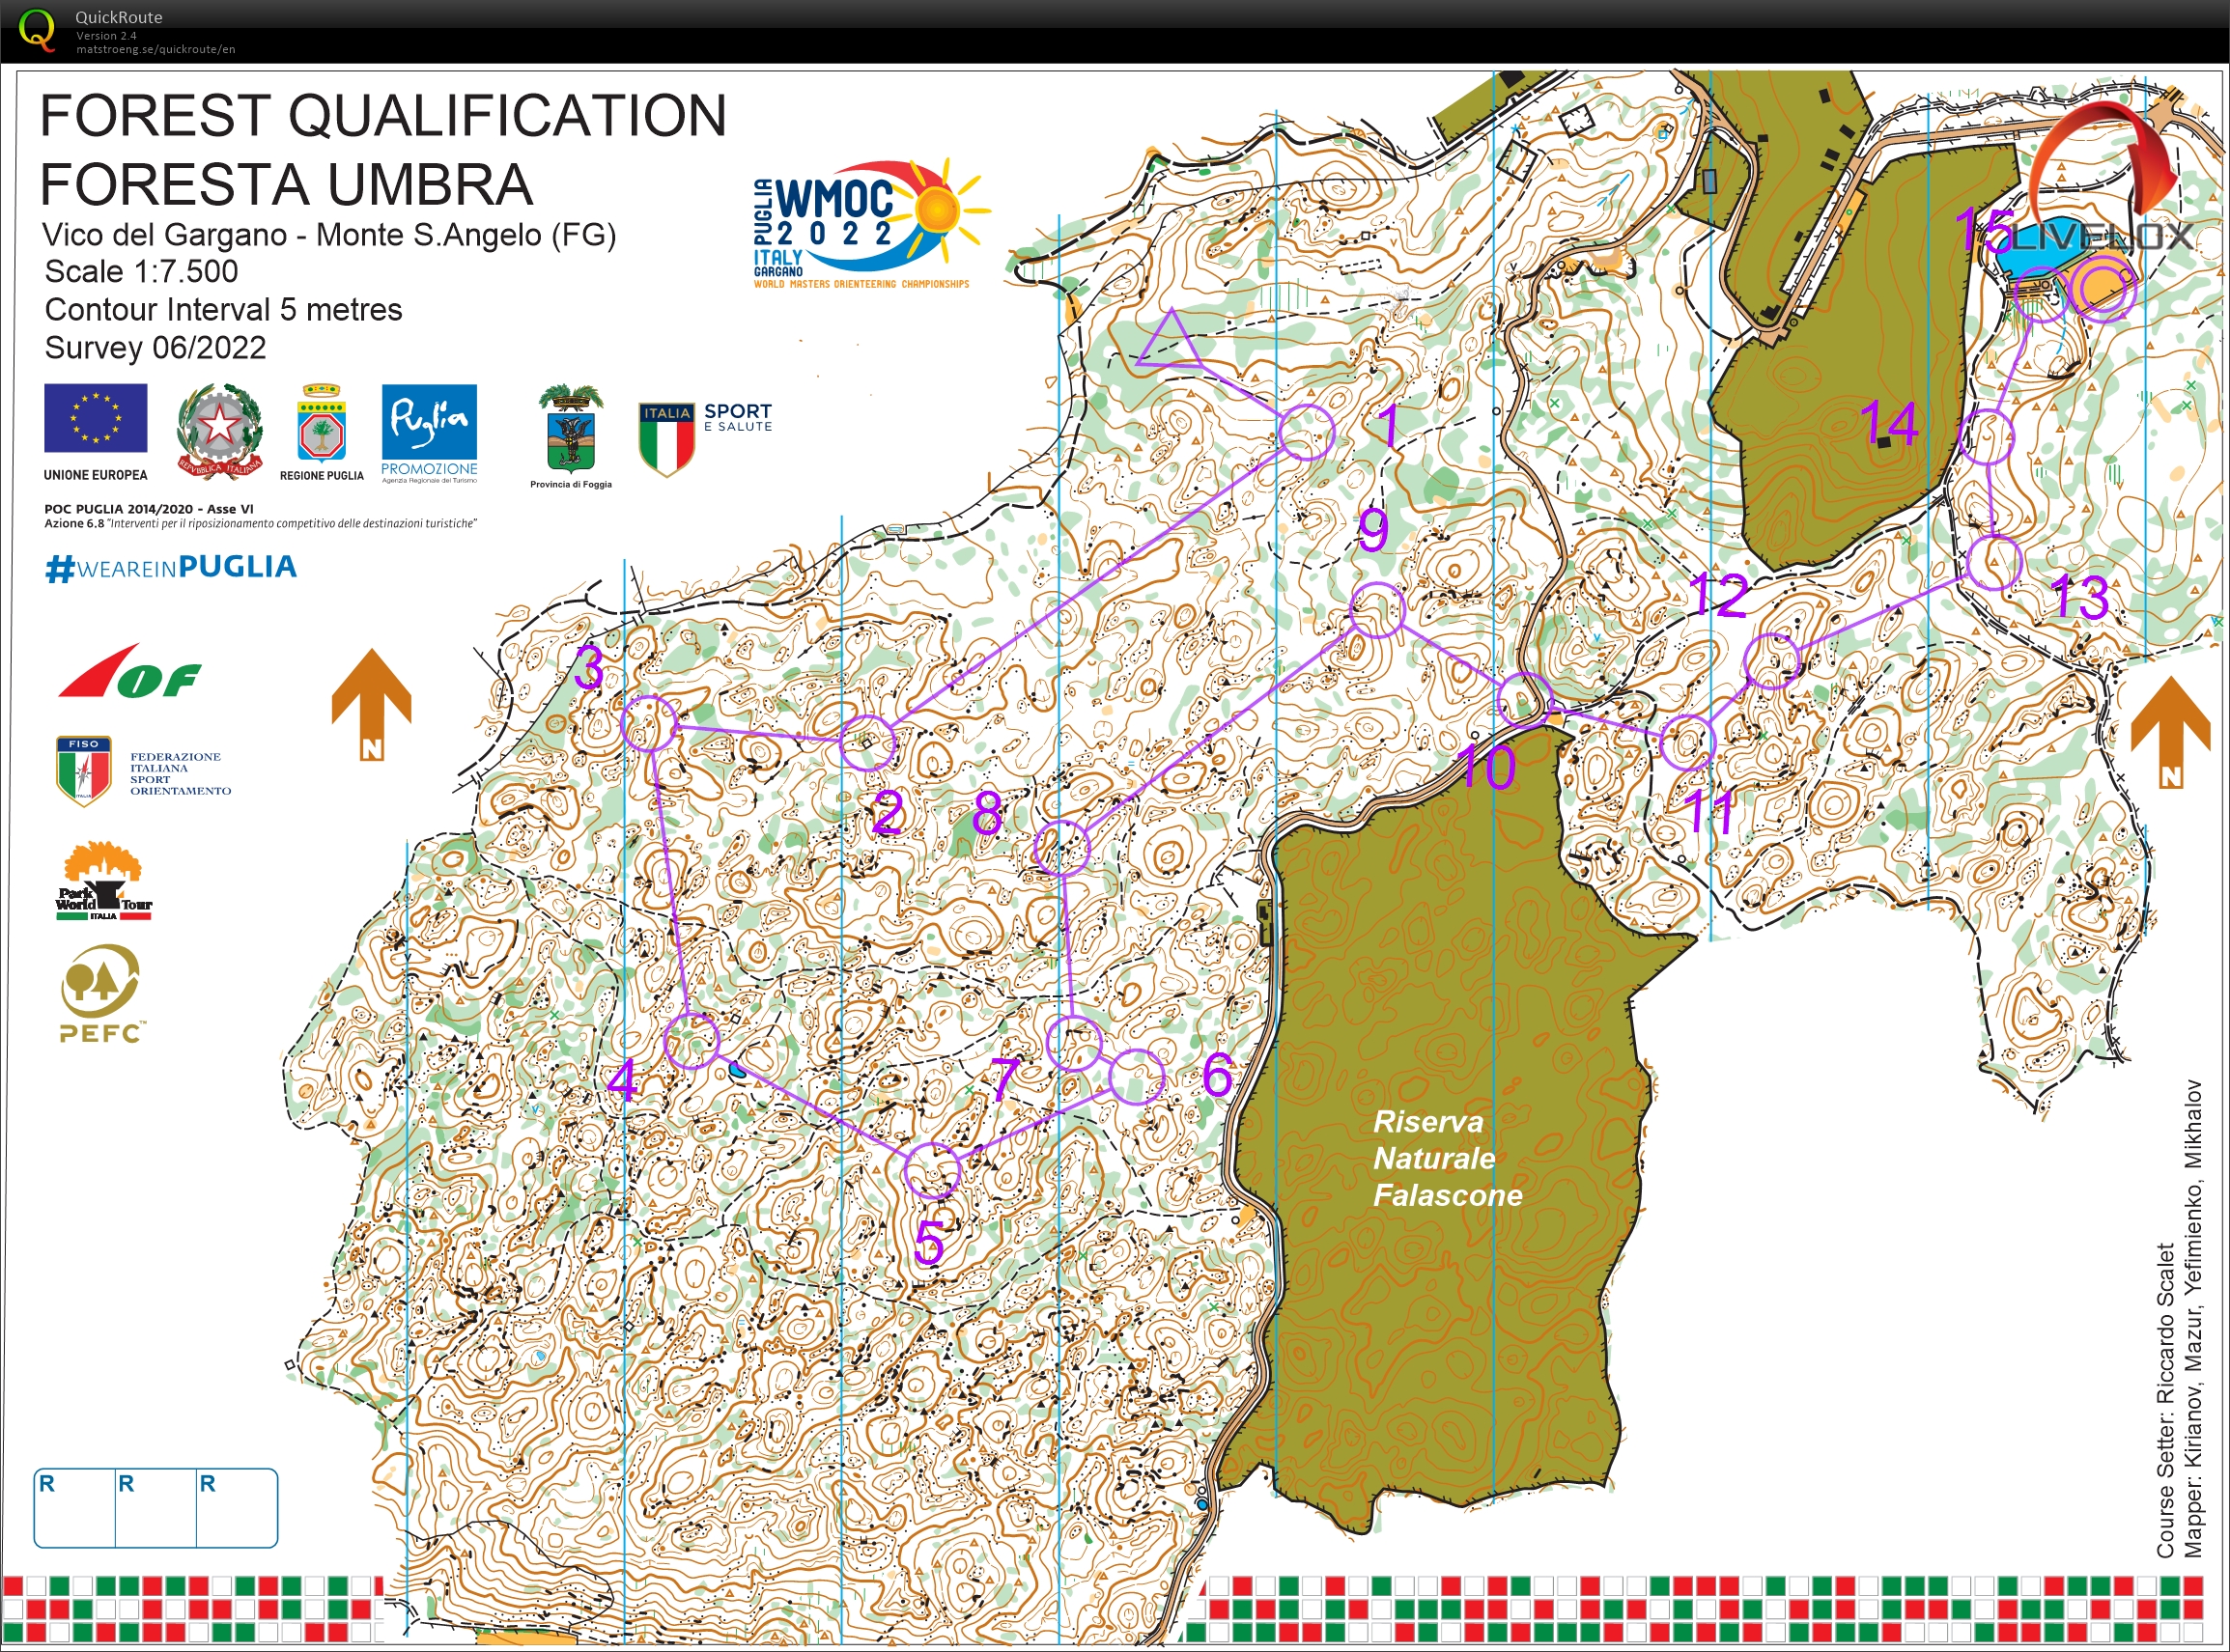 WMOC, Foresta Umbra, Italia, Skogskvaifisering, M60-3 (13-07-2022)